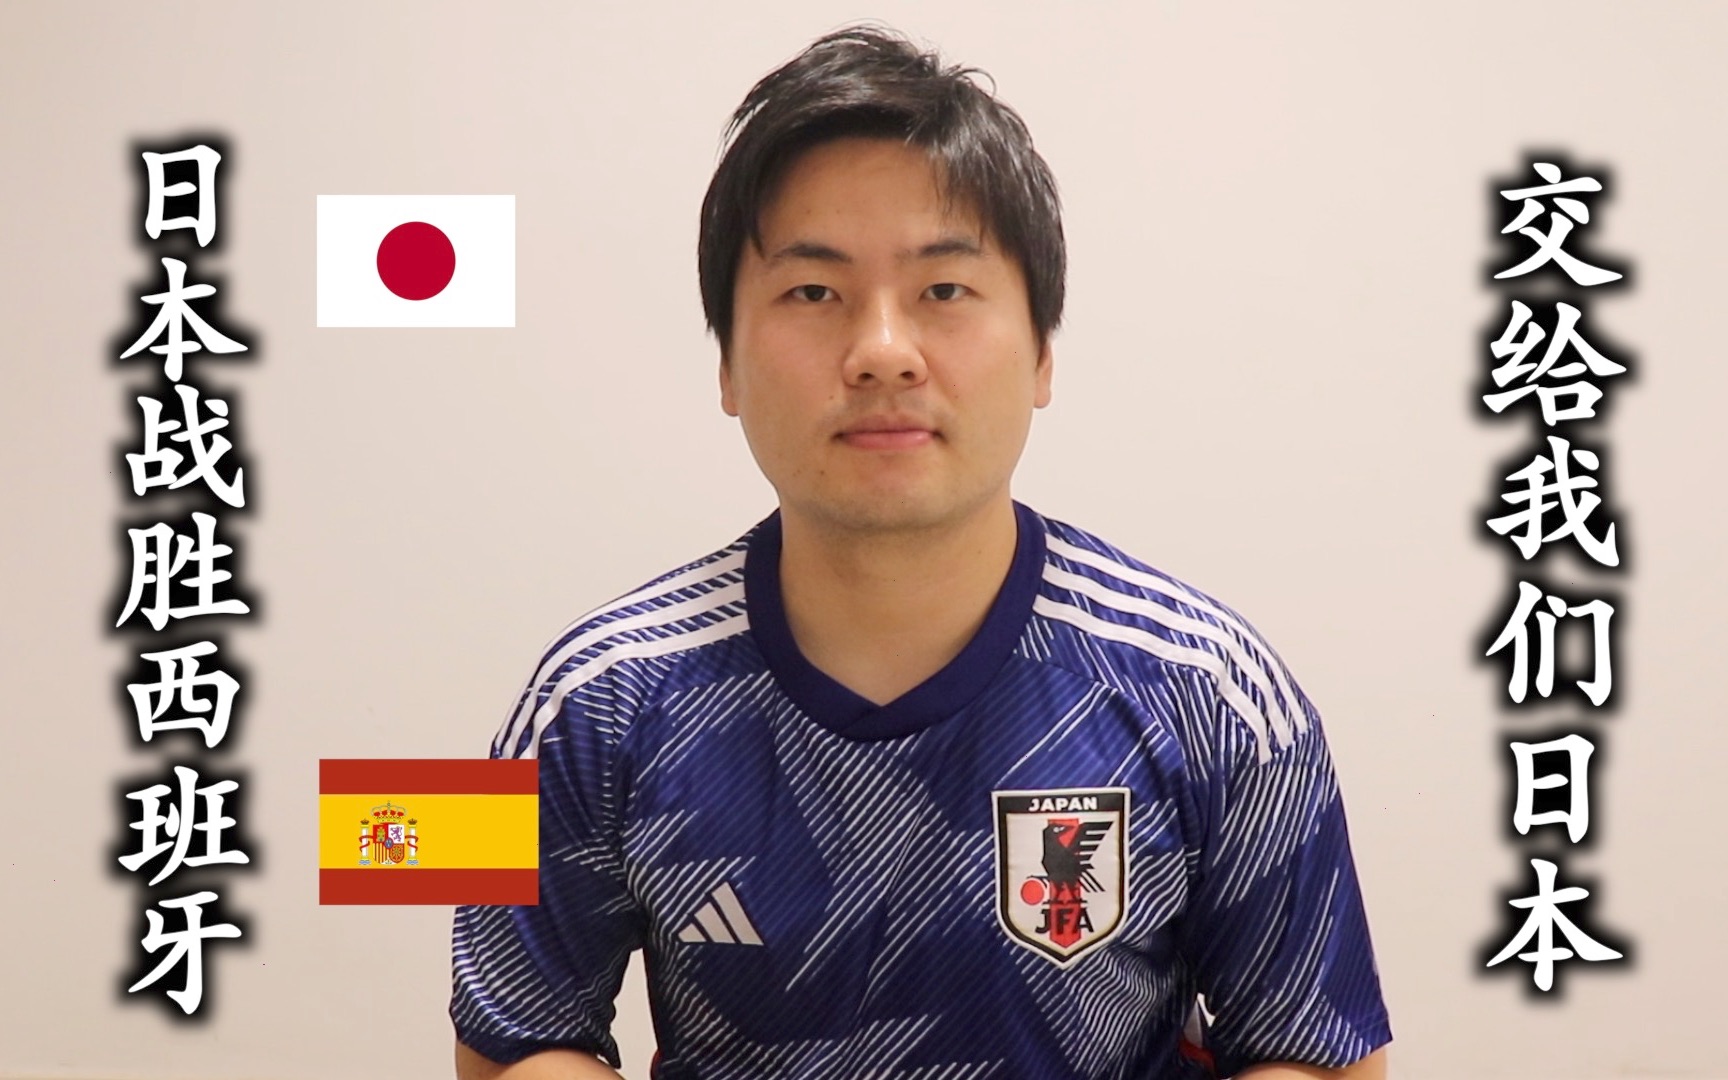 终于来了今天。世界杯日本vs西班牙。交给我们日本吧。